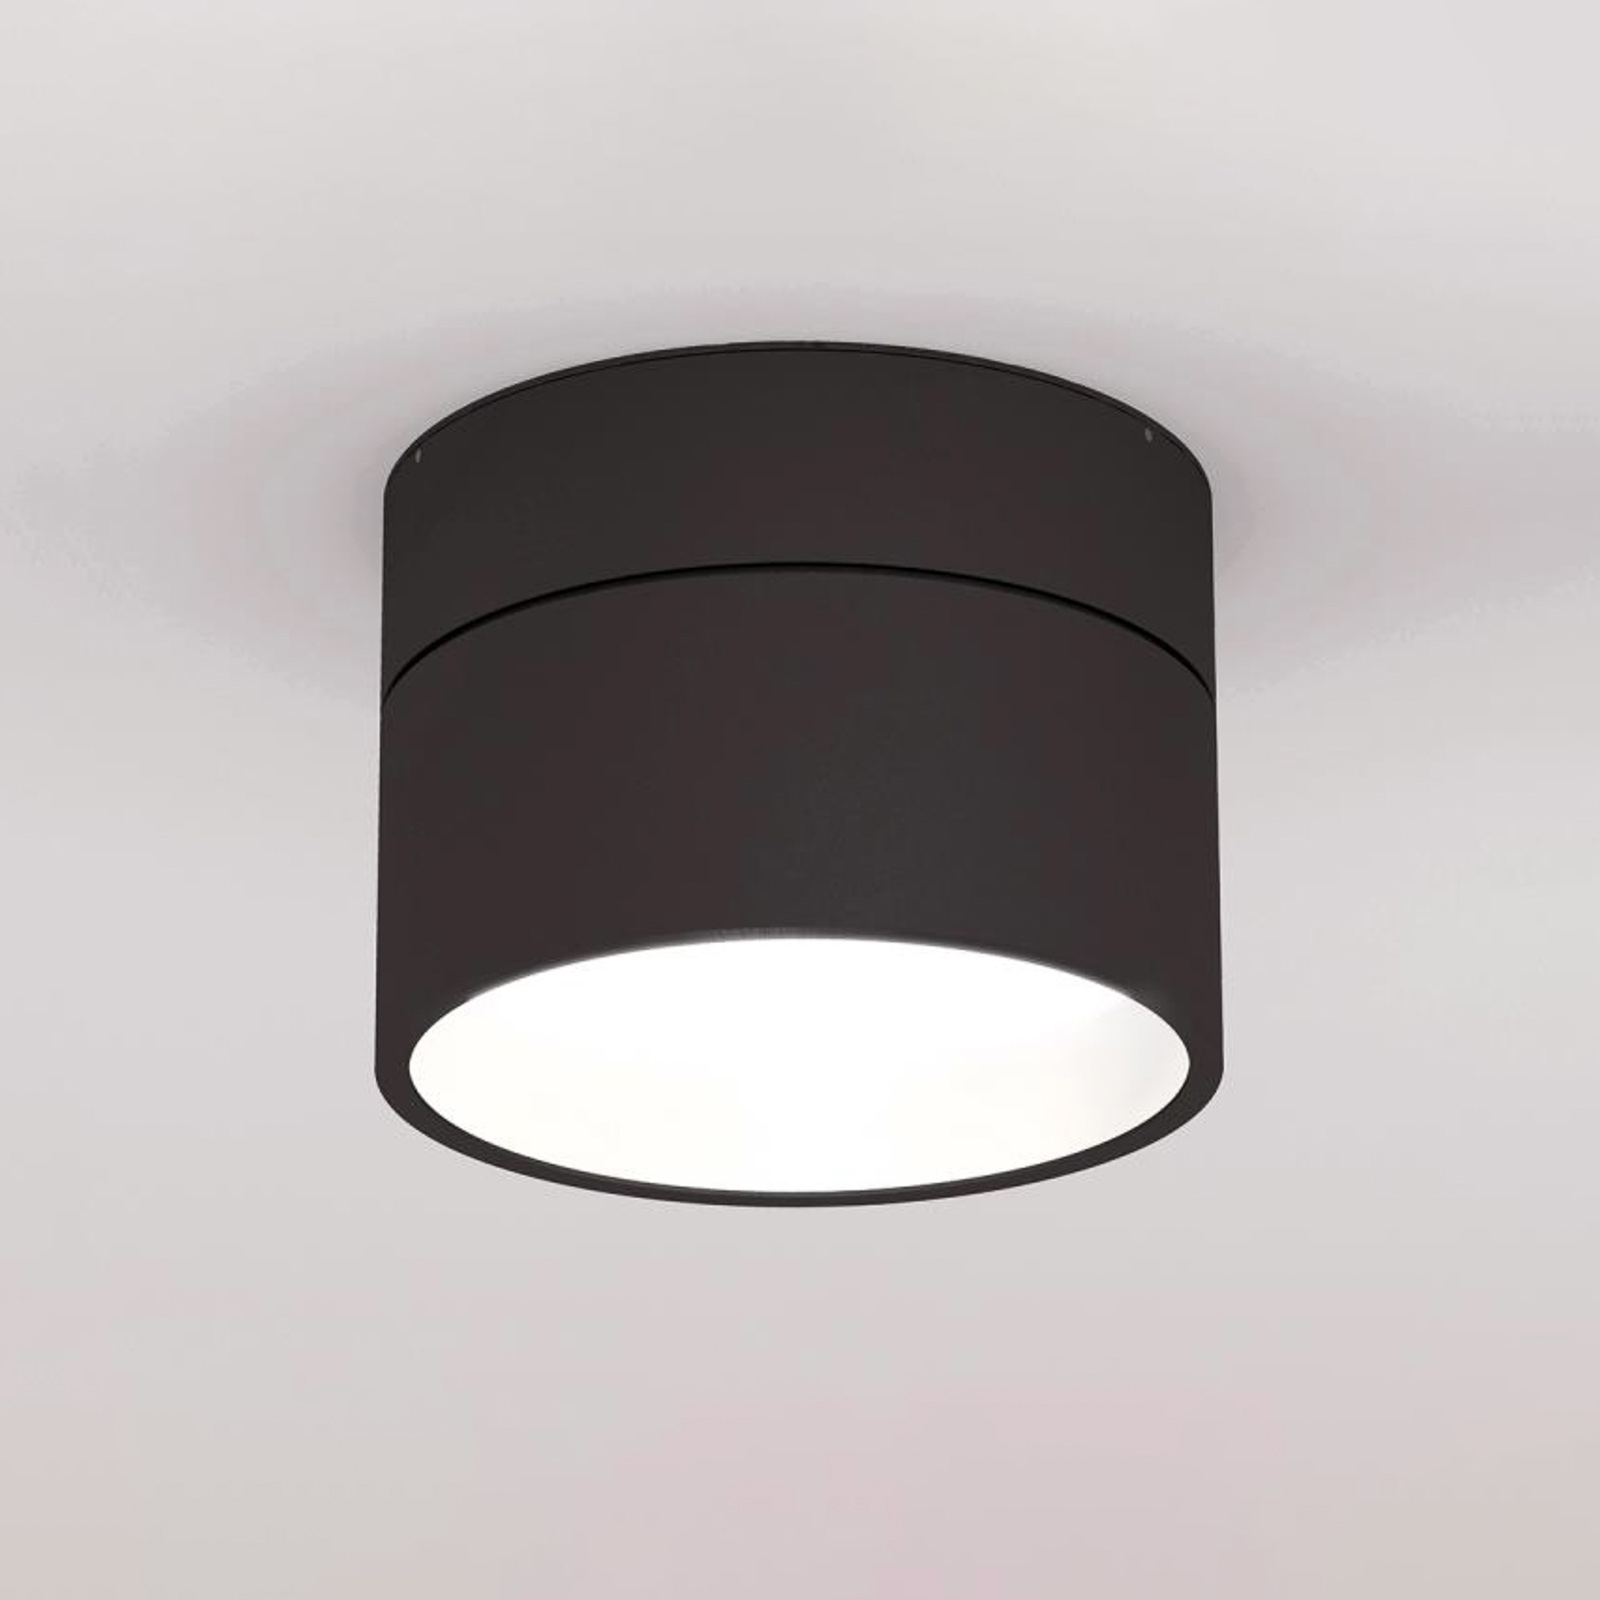 Turn on LED-Deckenlampe dim 2700K schwarz/weiß